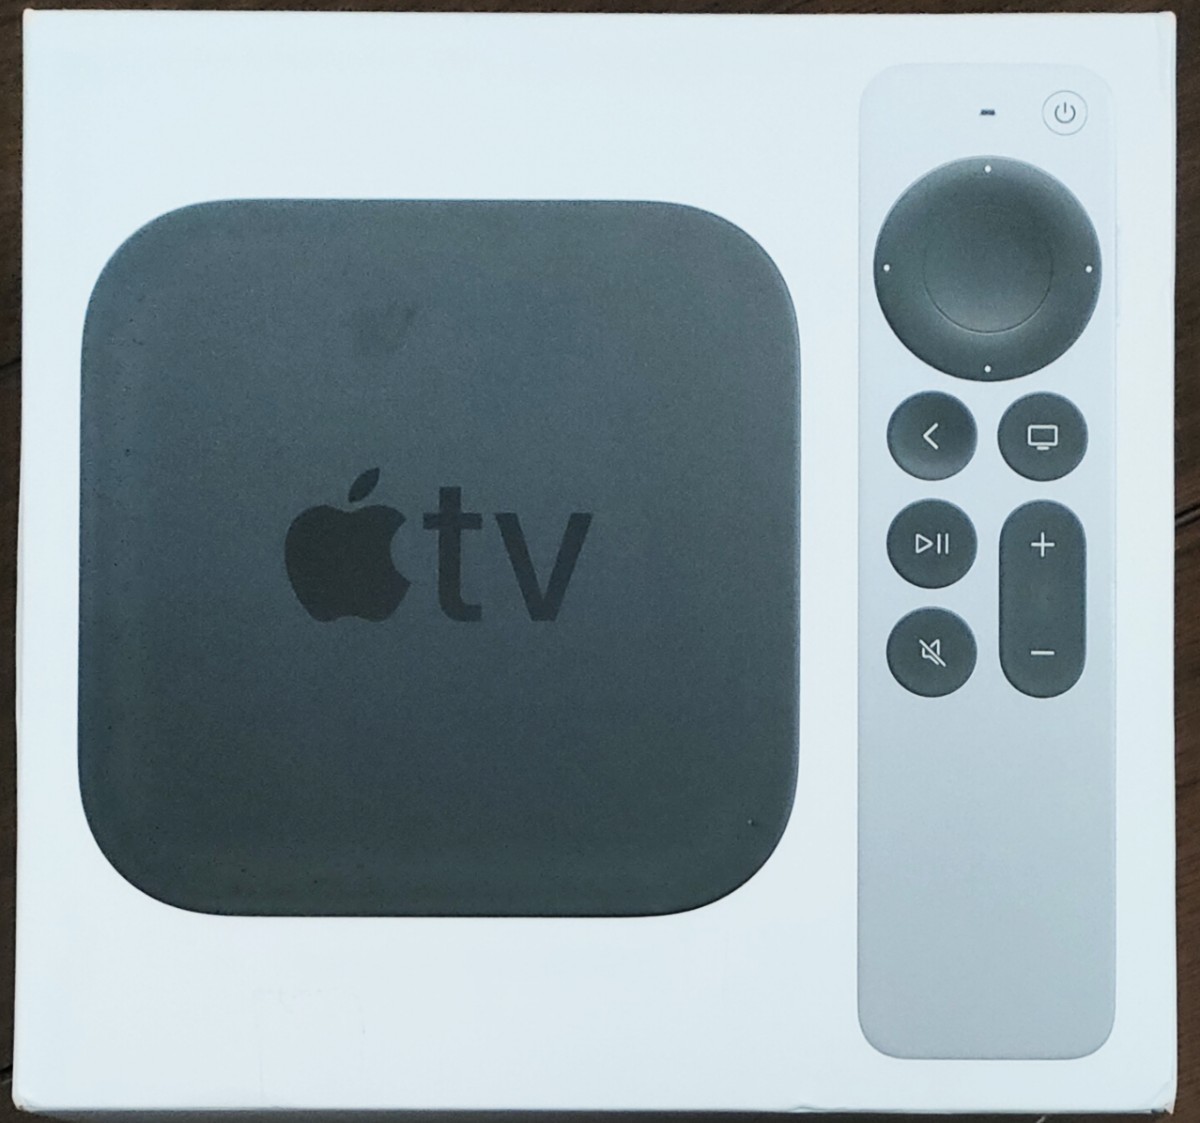 Yahoo!オークション -「apple tv 4k 32gb」(映像機器) の落札相場 